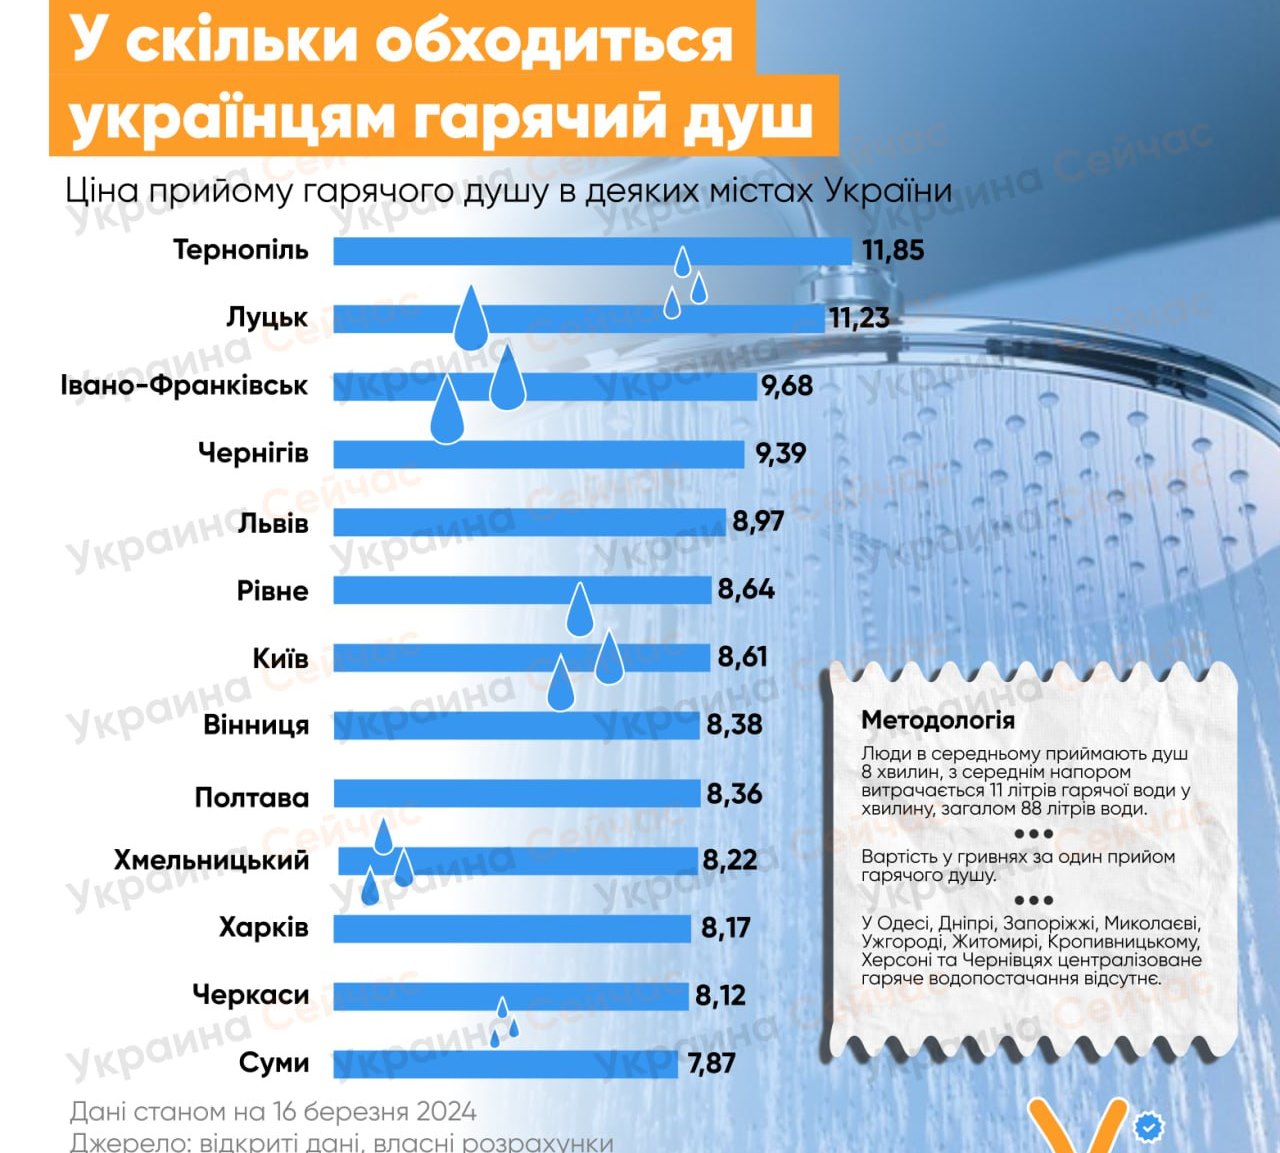 Названы цены на горячий душ в разных городах Украины: инфографика 